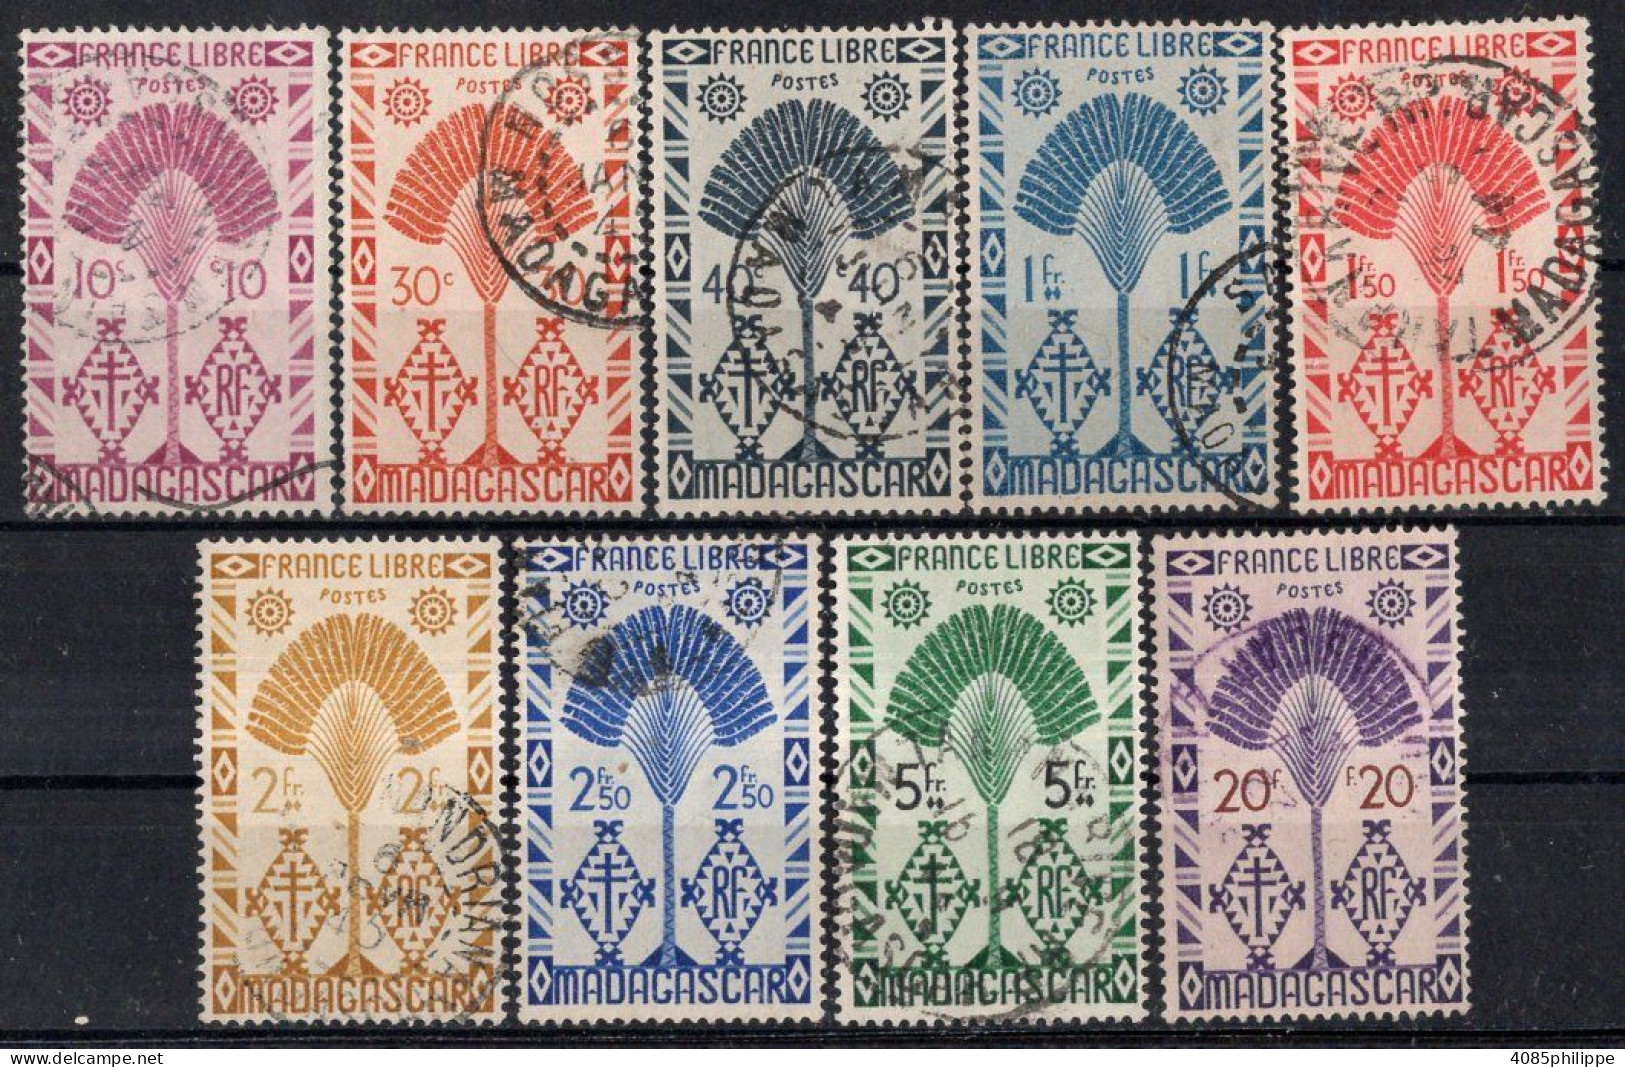 MADAGASCAR Timbres-Poste N°266,268,269,271 à 274,276 & 278 Oblitérés TB Cote : 5€75 - Used Stamps